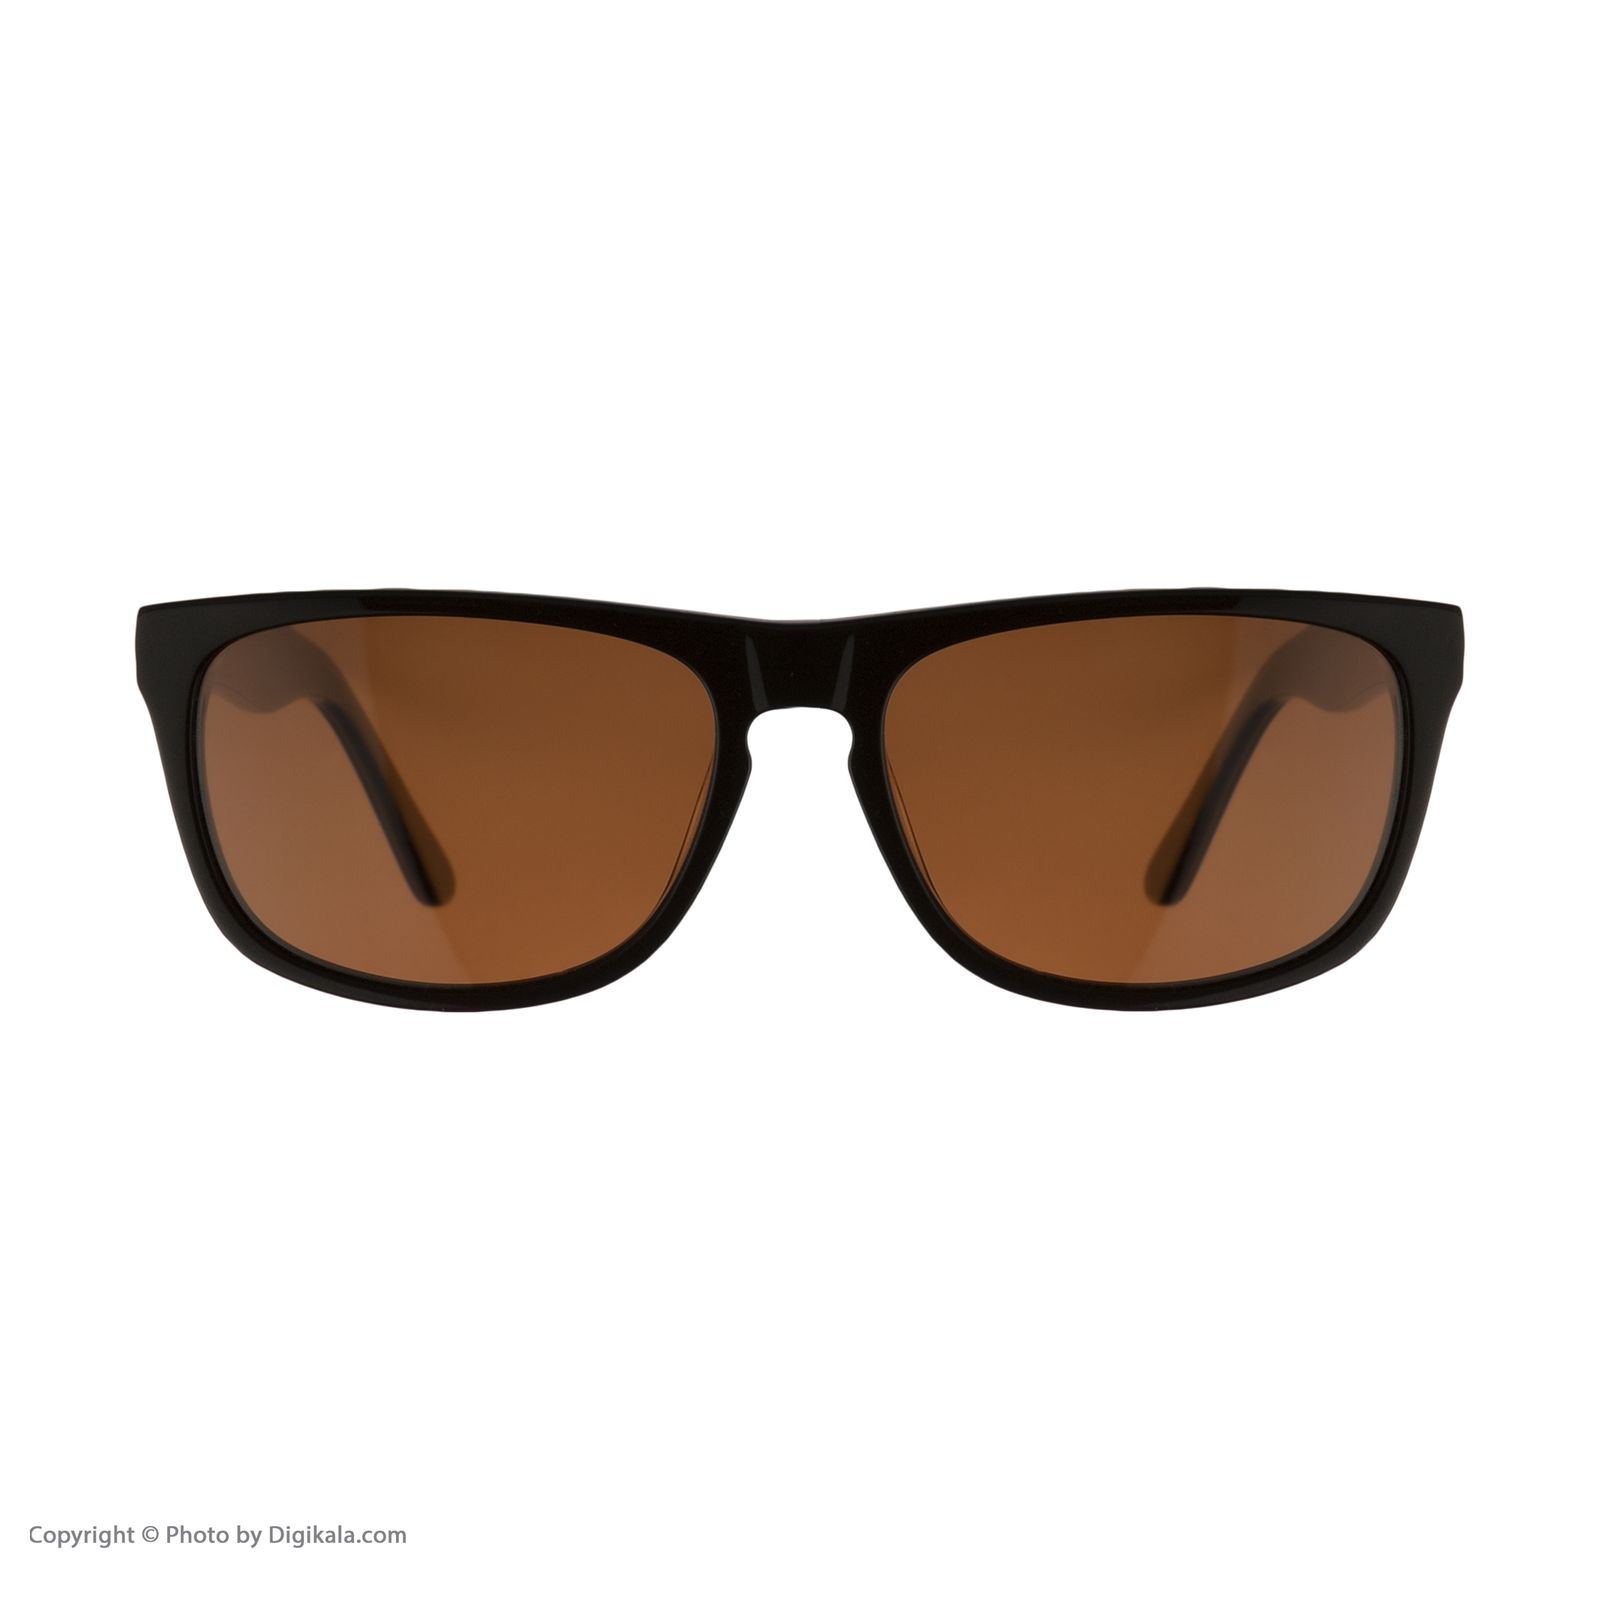 عینک آفتابی مردانه کلارک بای تروی کولیزوم مدل k4008-c.2 -  - 2